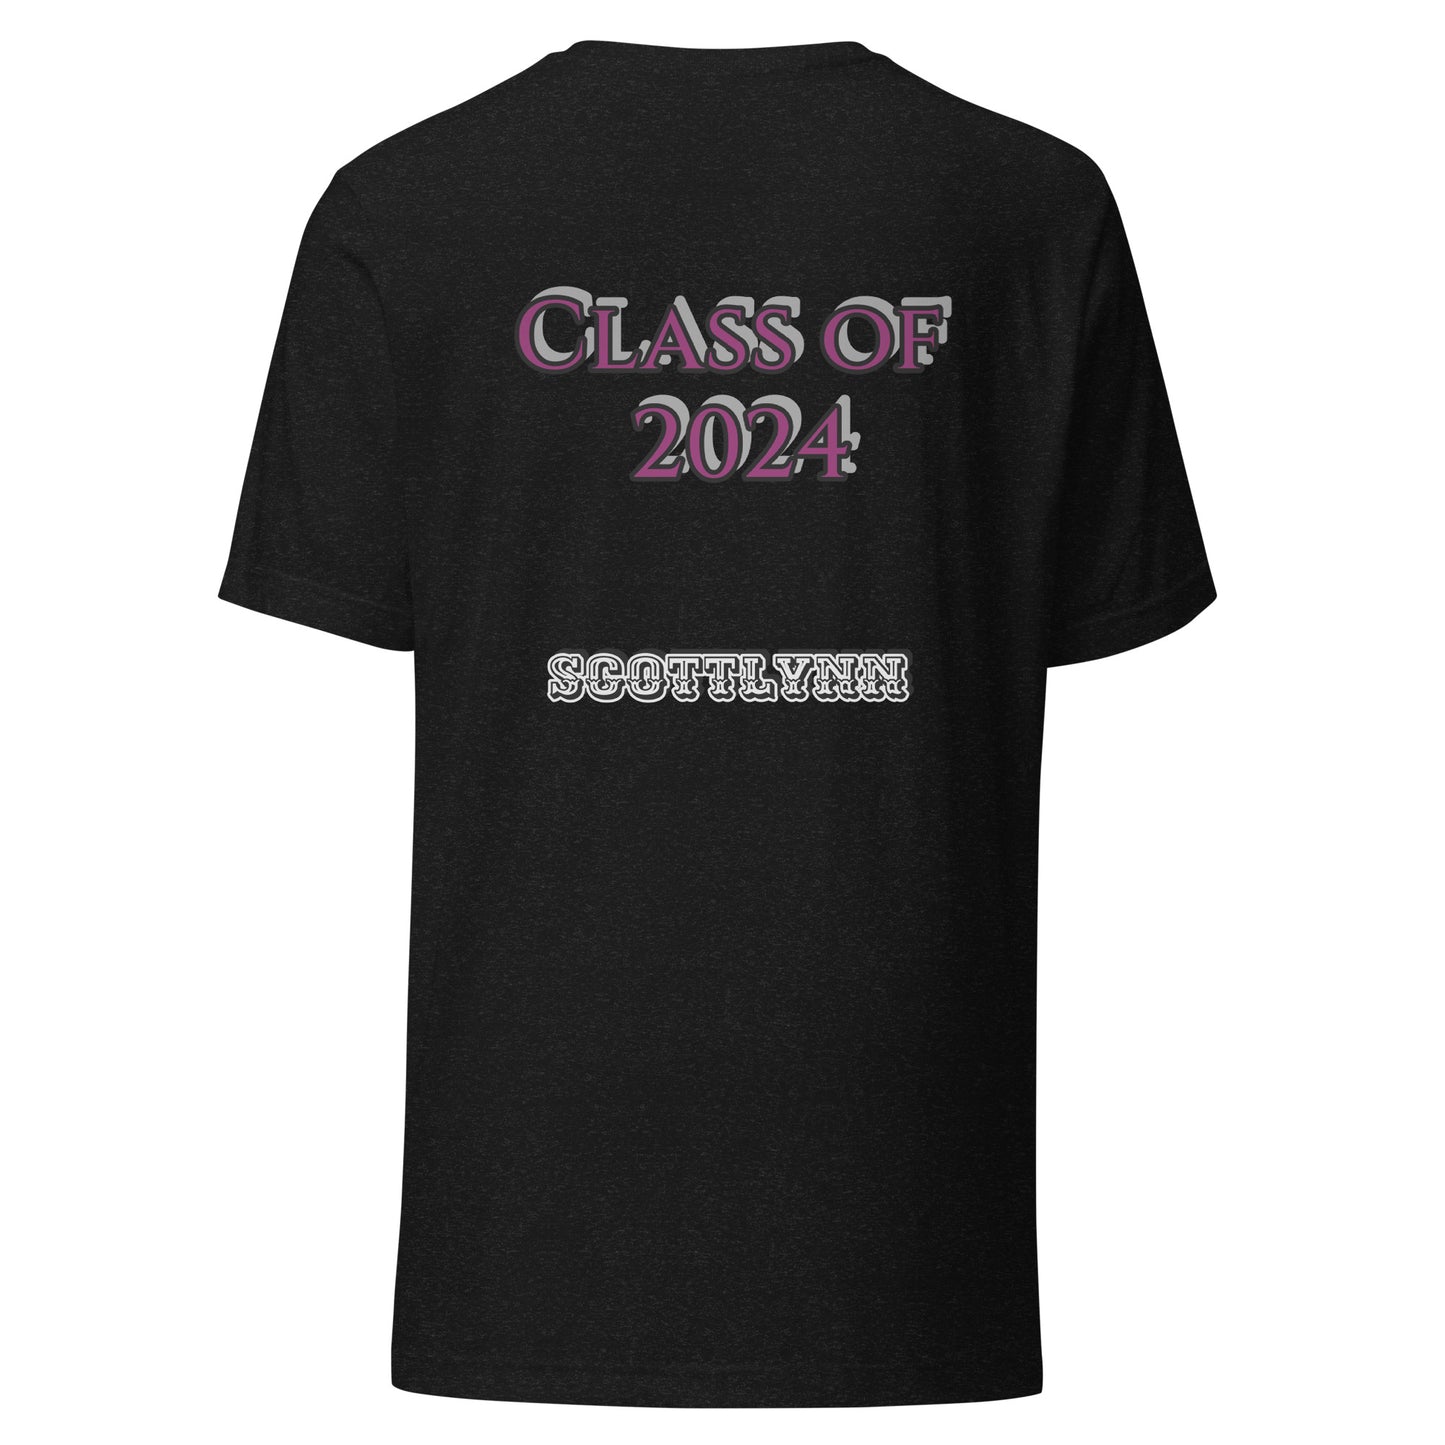 Class of 2024 T-shirt CUSTOM MADE